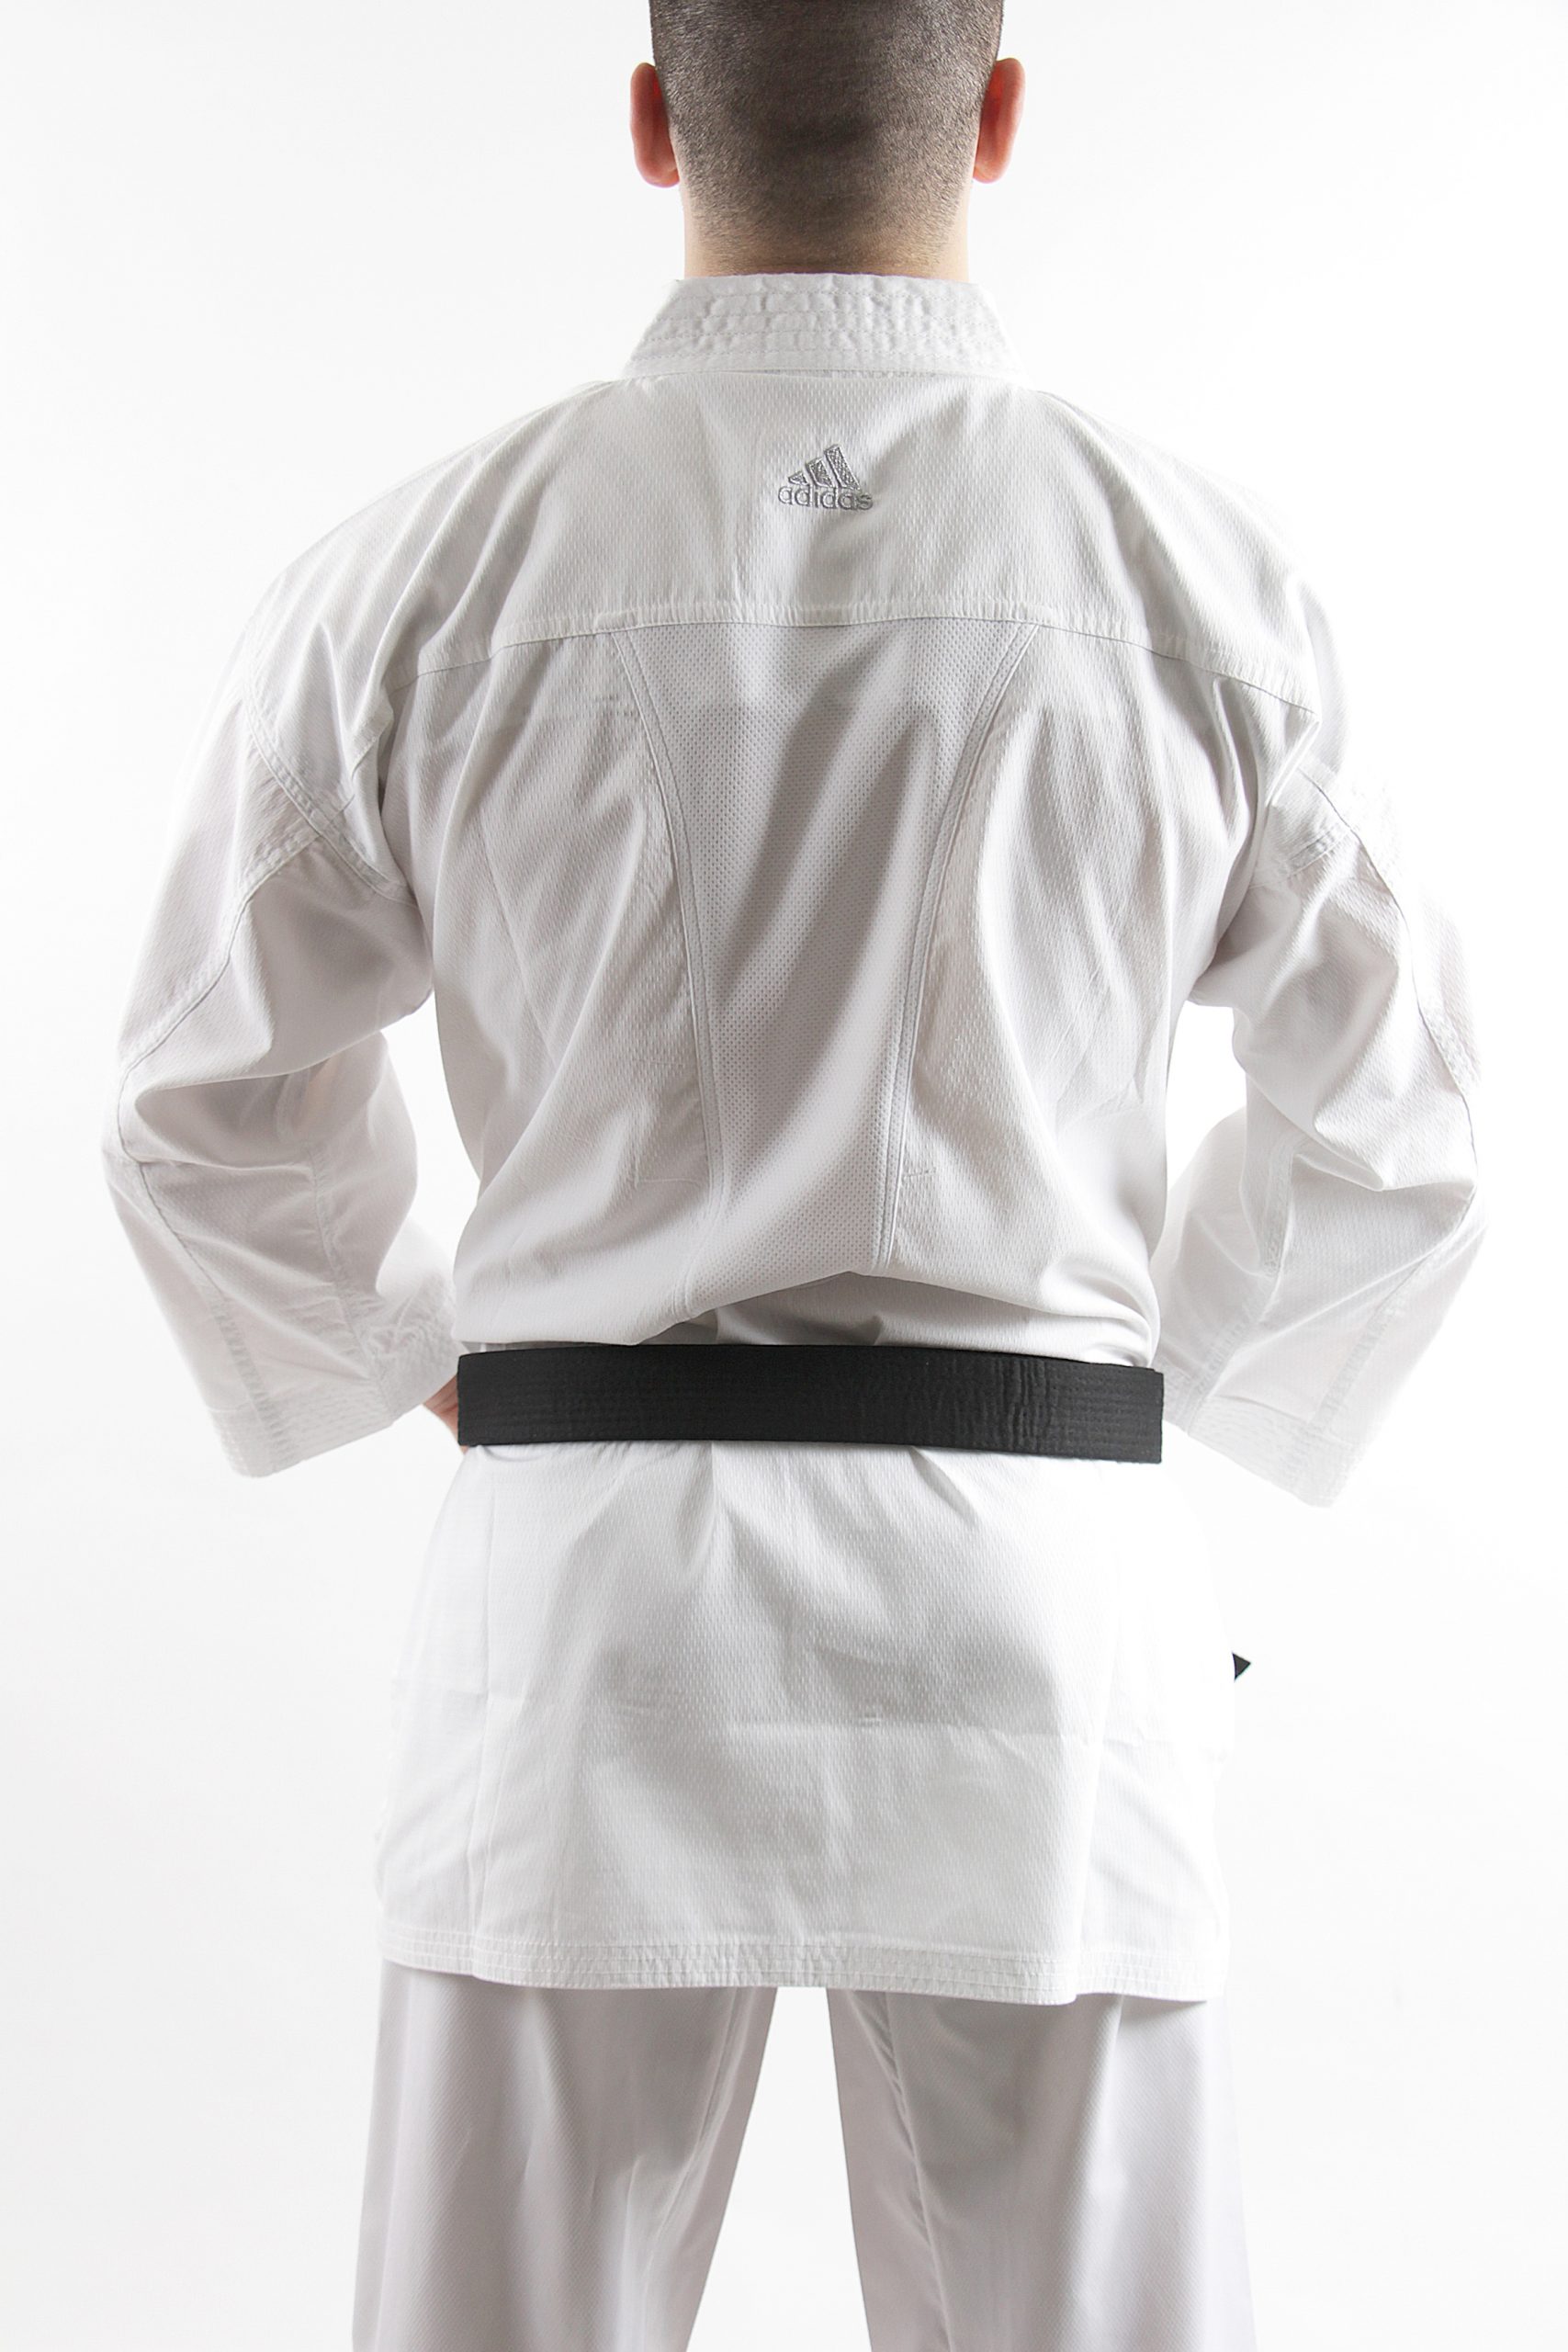 Karategi Adidas - para artes marciales